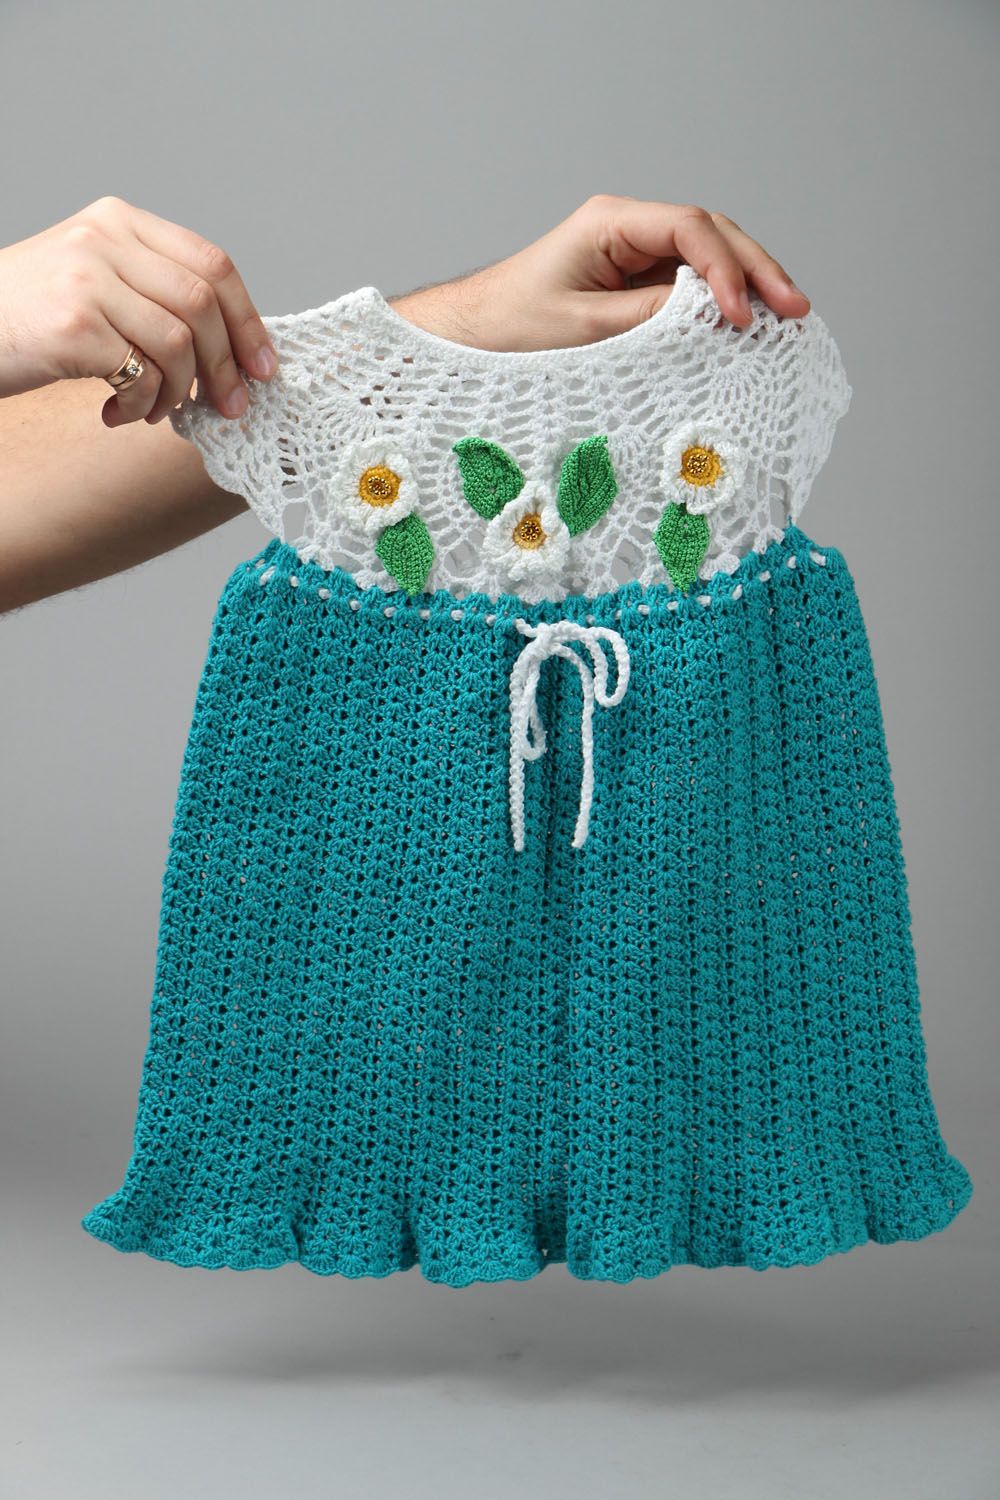 Crochet children's sundress photo 4